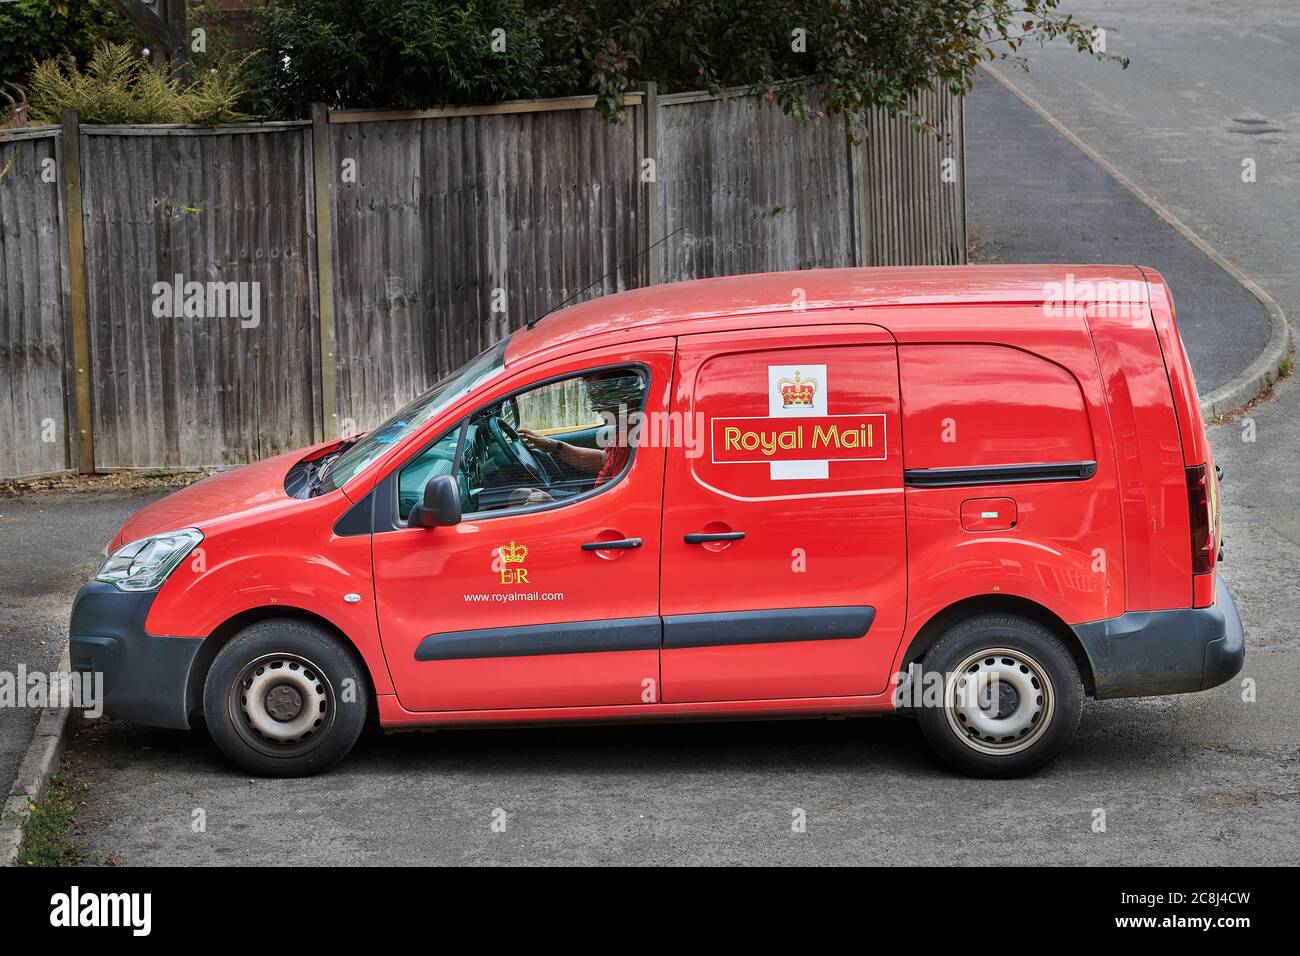 Un postier est assis dans son camion rouge vif de livraison du Royal Mail (avec ses armoiries royales) après avoir posté un colis dans une maison. Banque D'Images